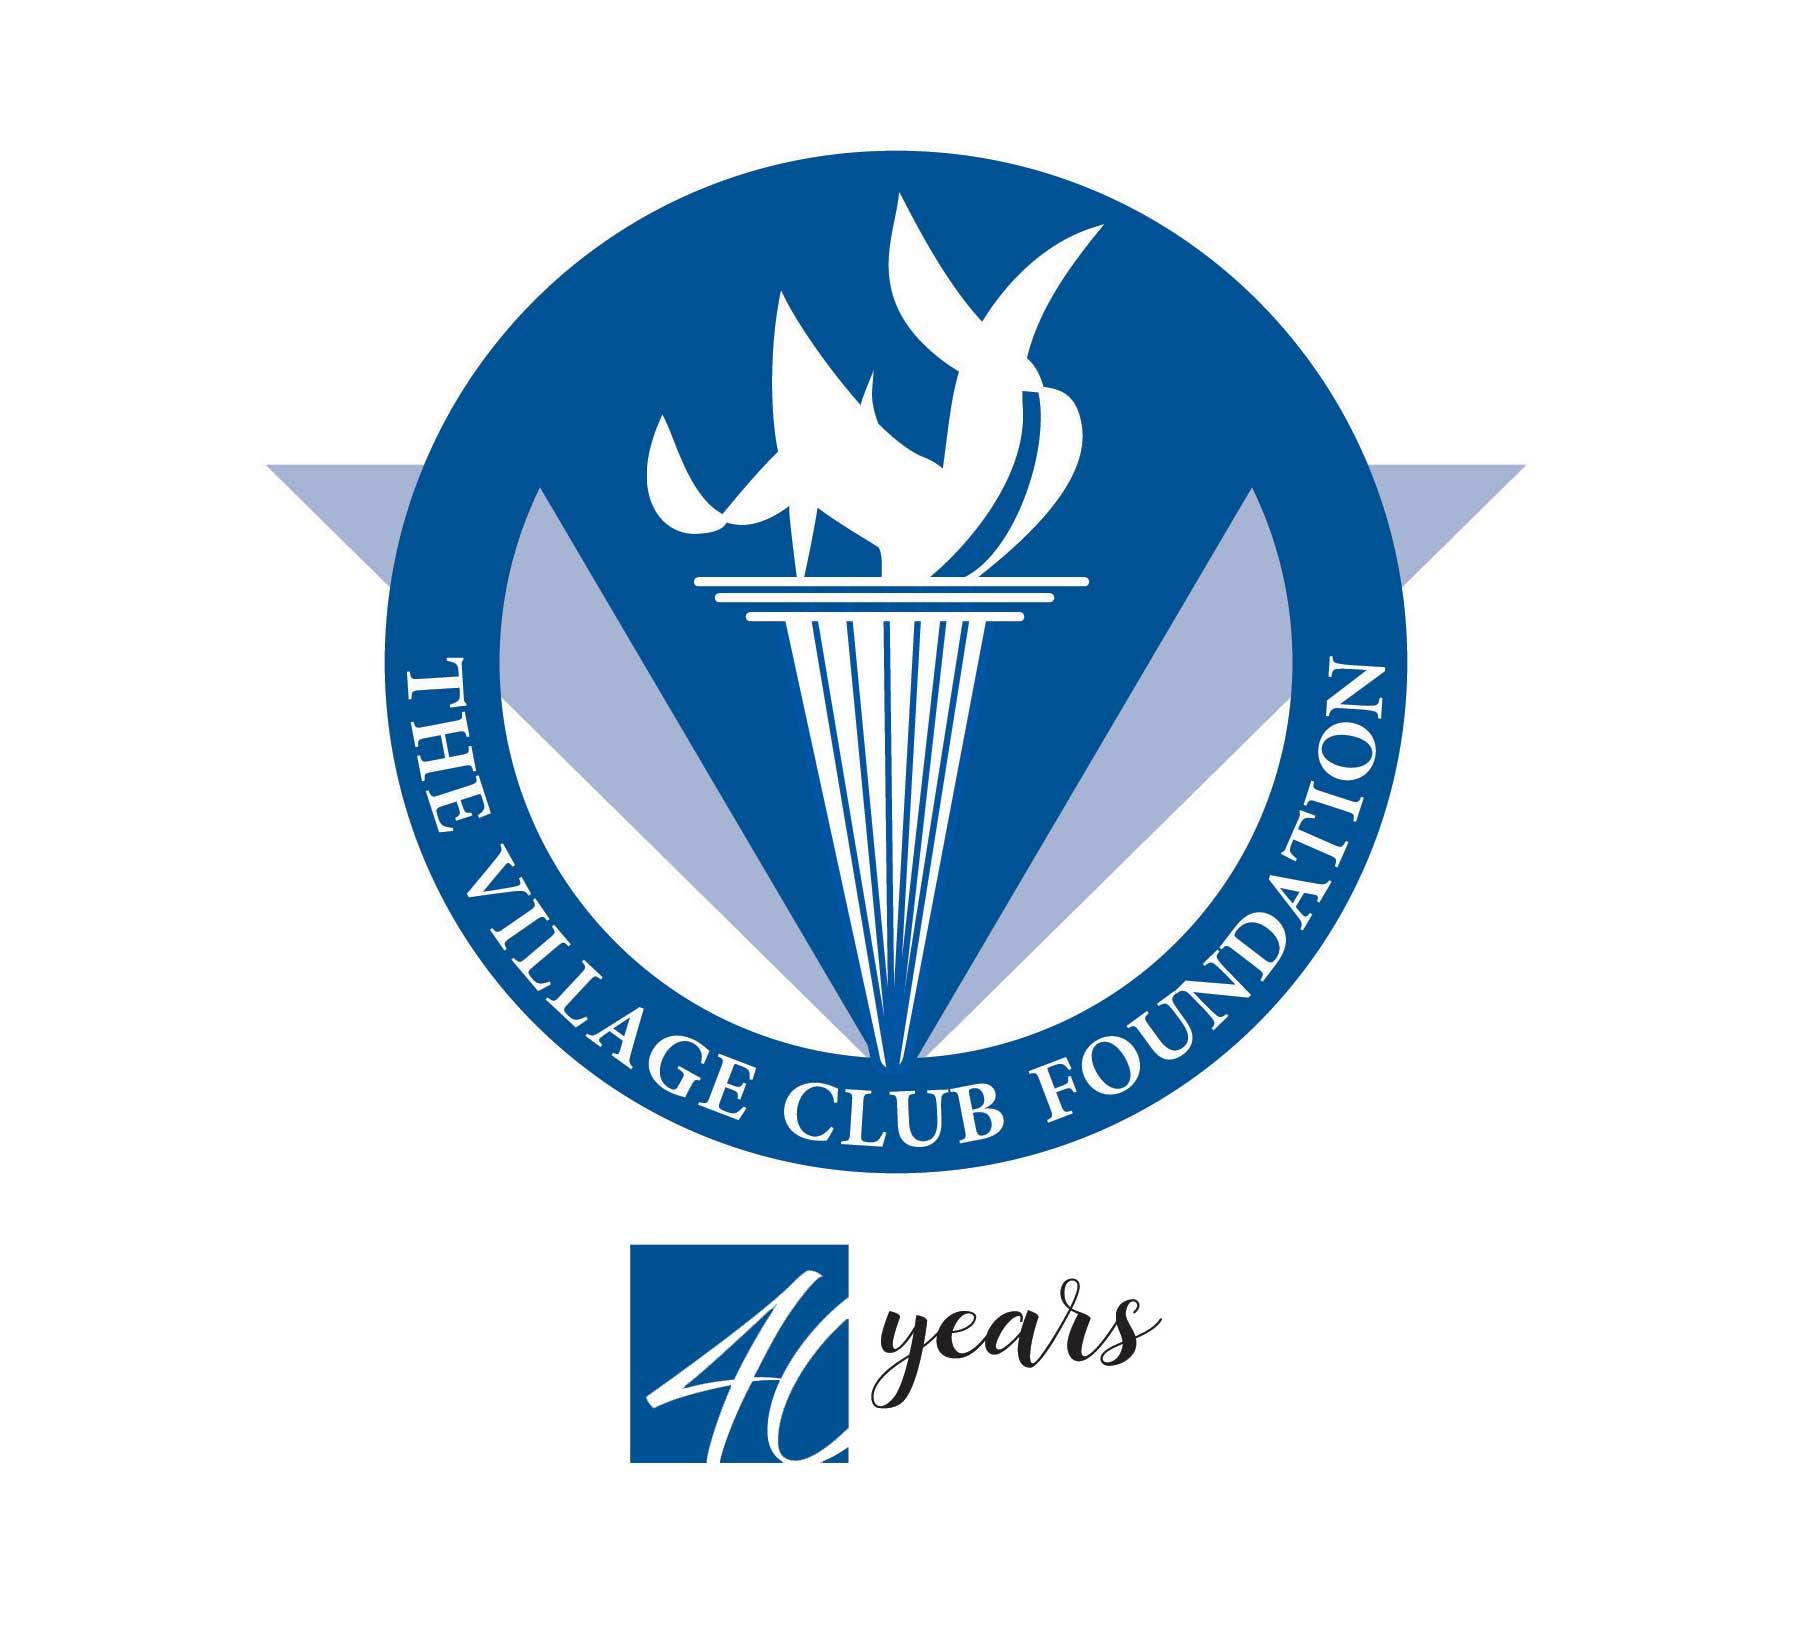 The Village Club Foundation